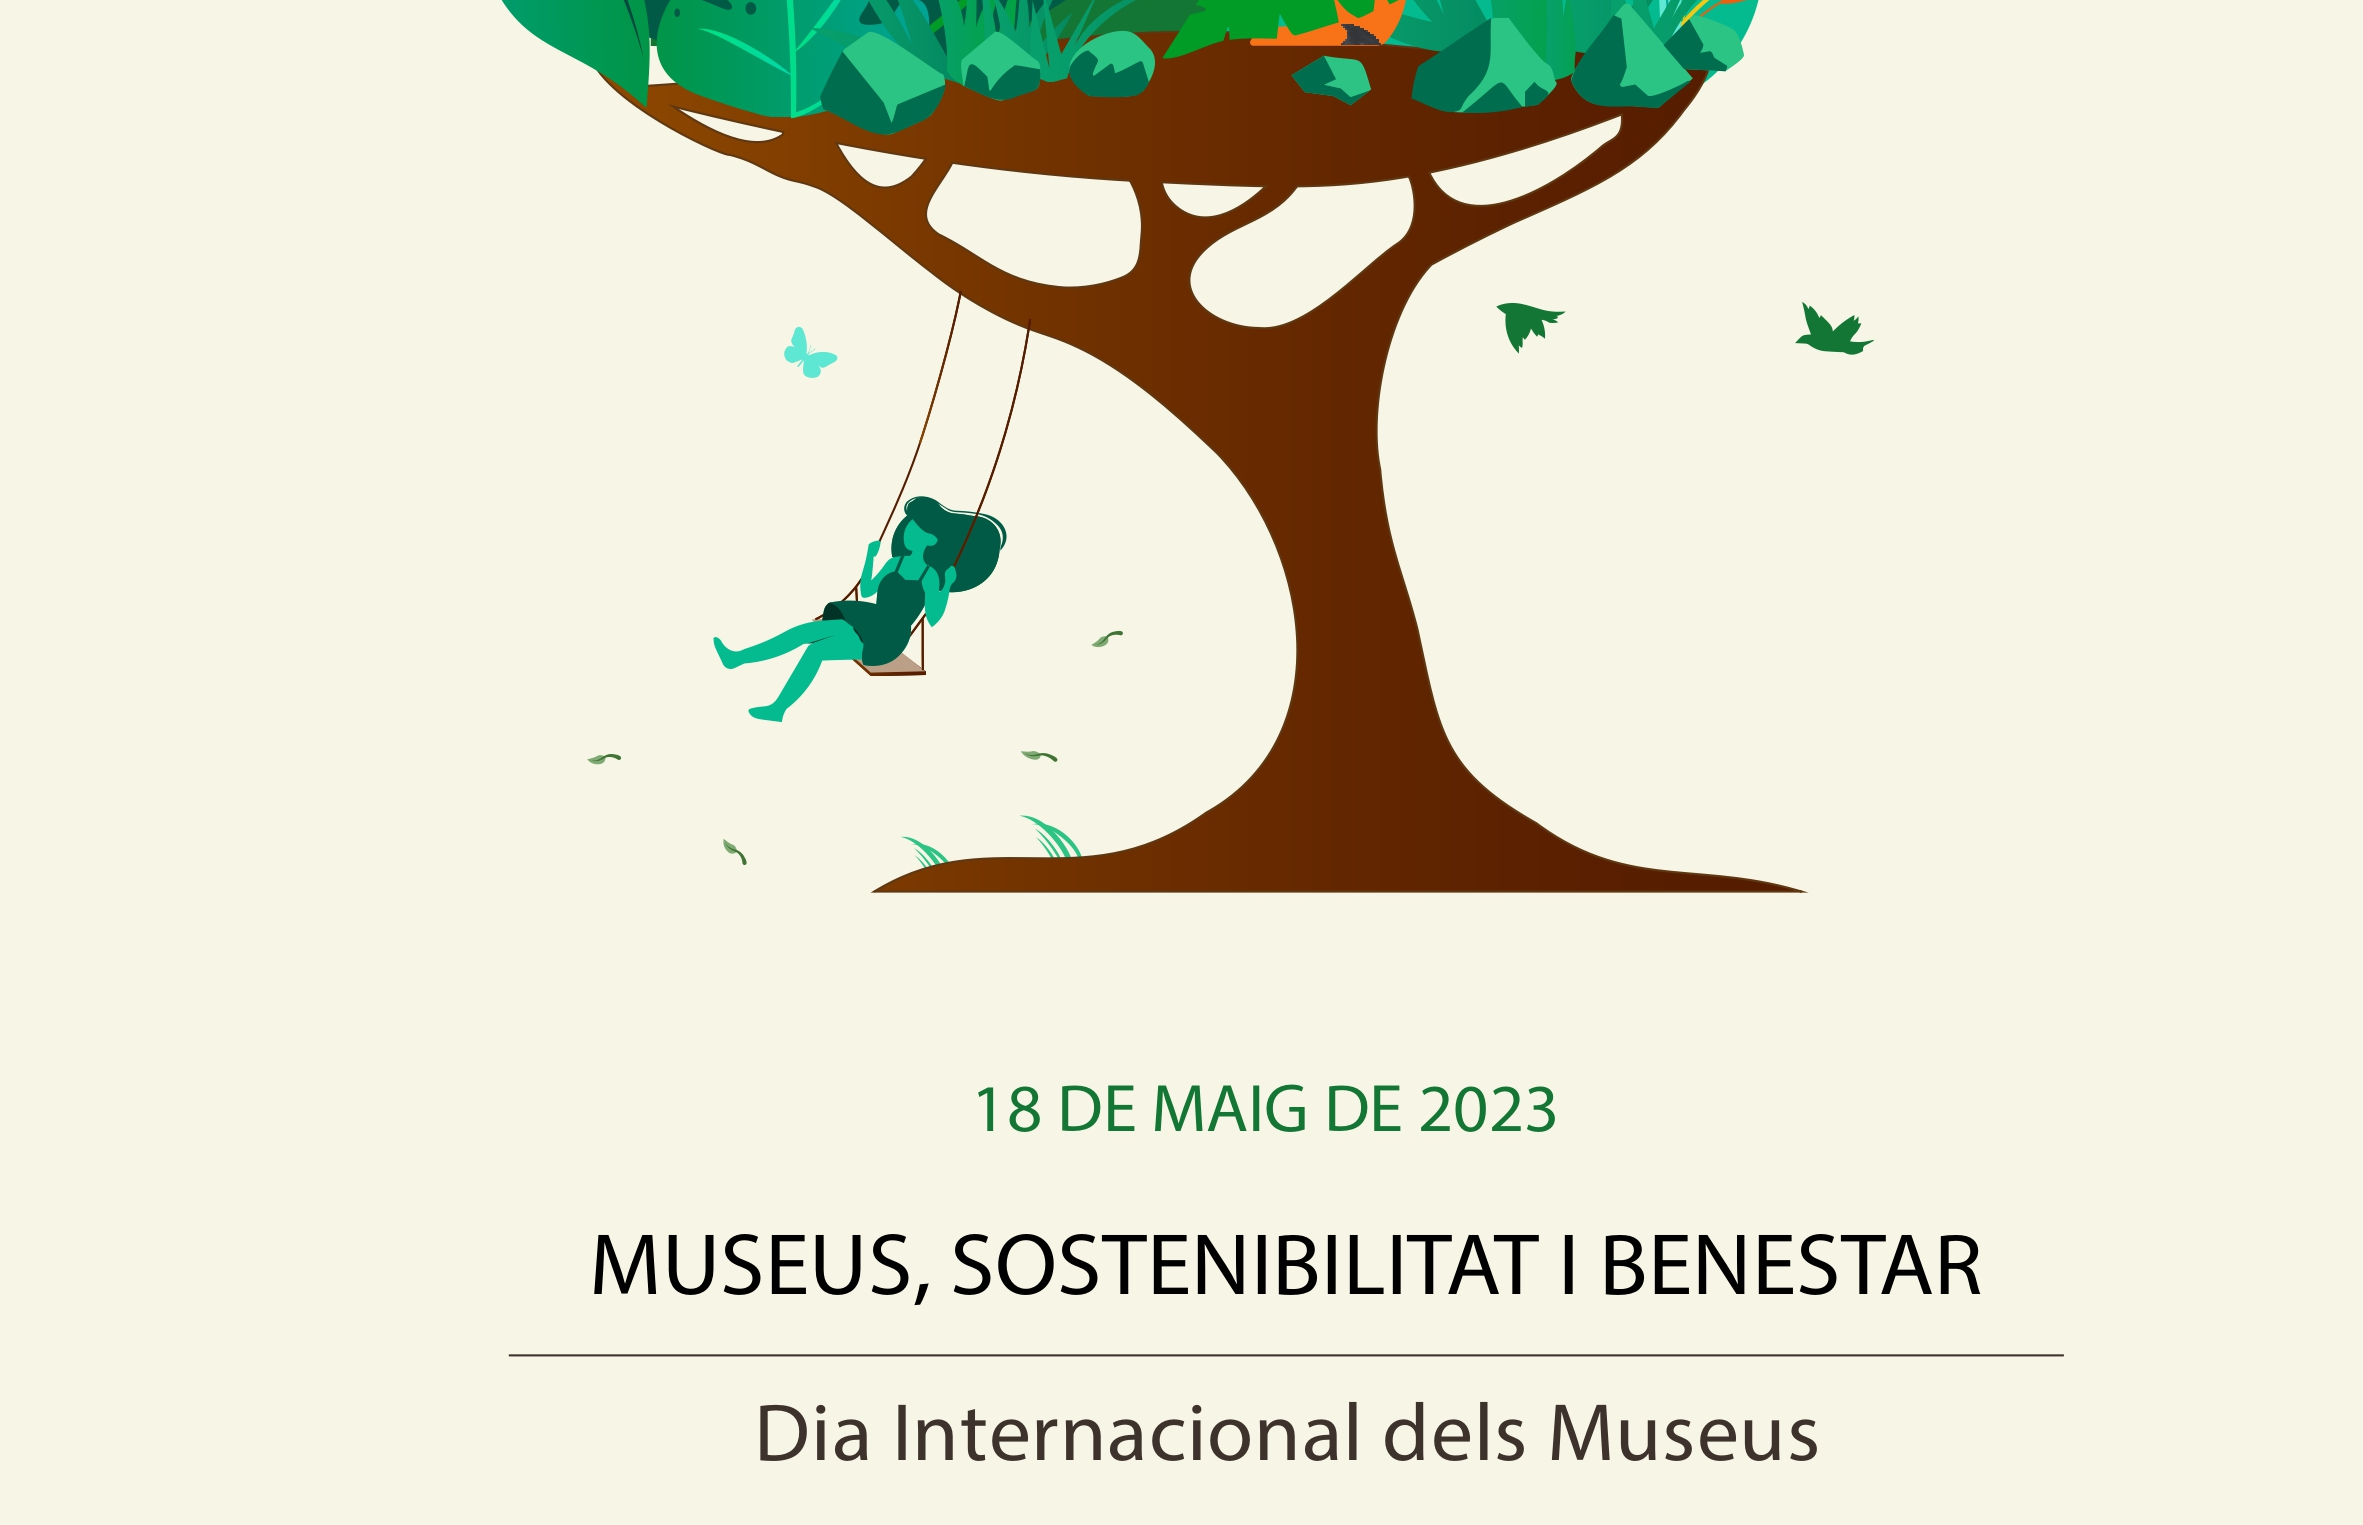 Dia Internacional dels Museus, Día Internacional de los Museos